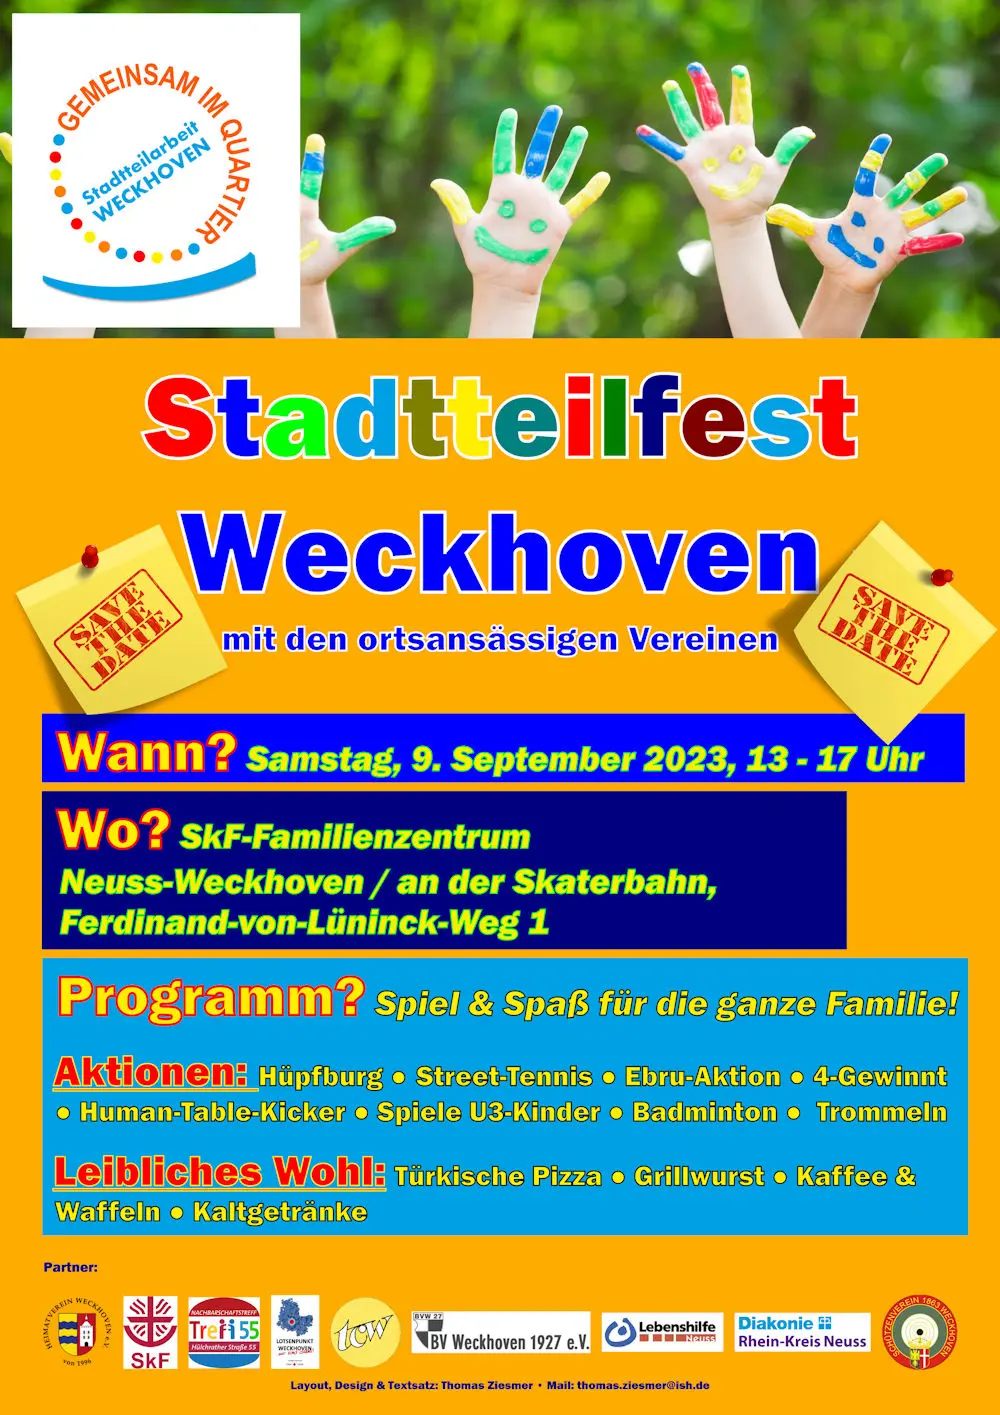 TCW macht beim 'Stadtteilfest Weckhoven' mit